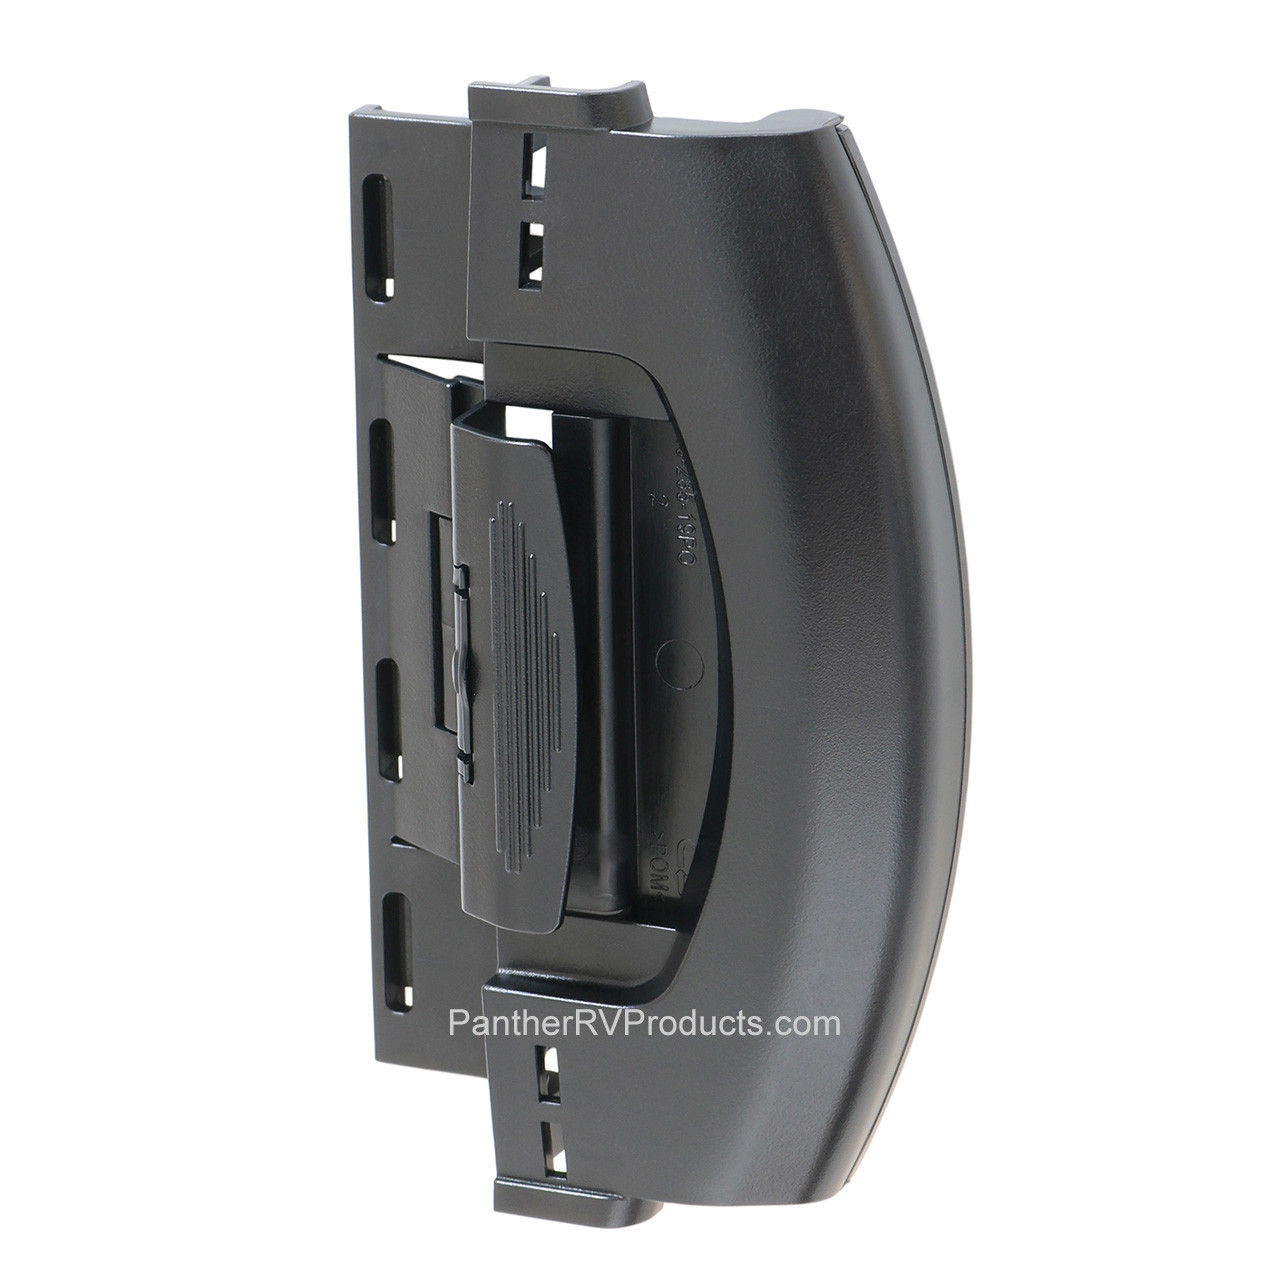 Dometic™ Coolmatic 4450015355 OEM Refrigerator Door Latch / Handle - S/S